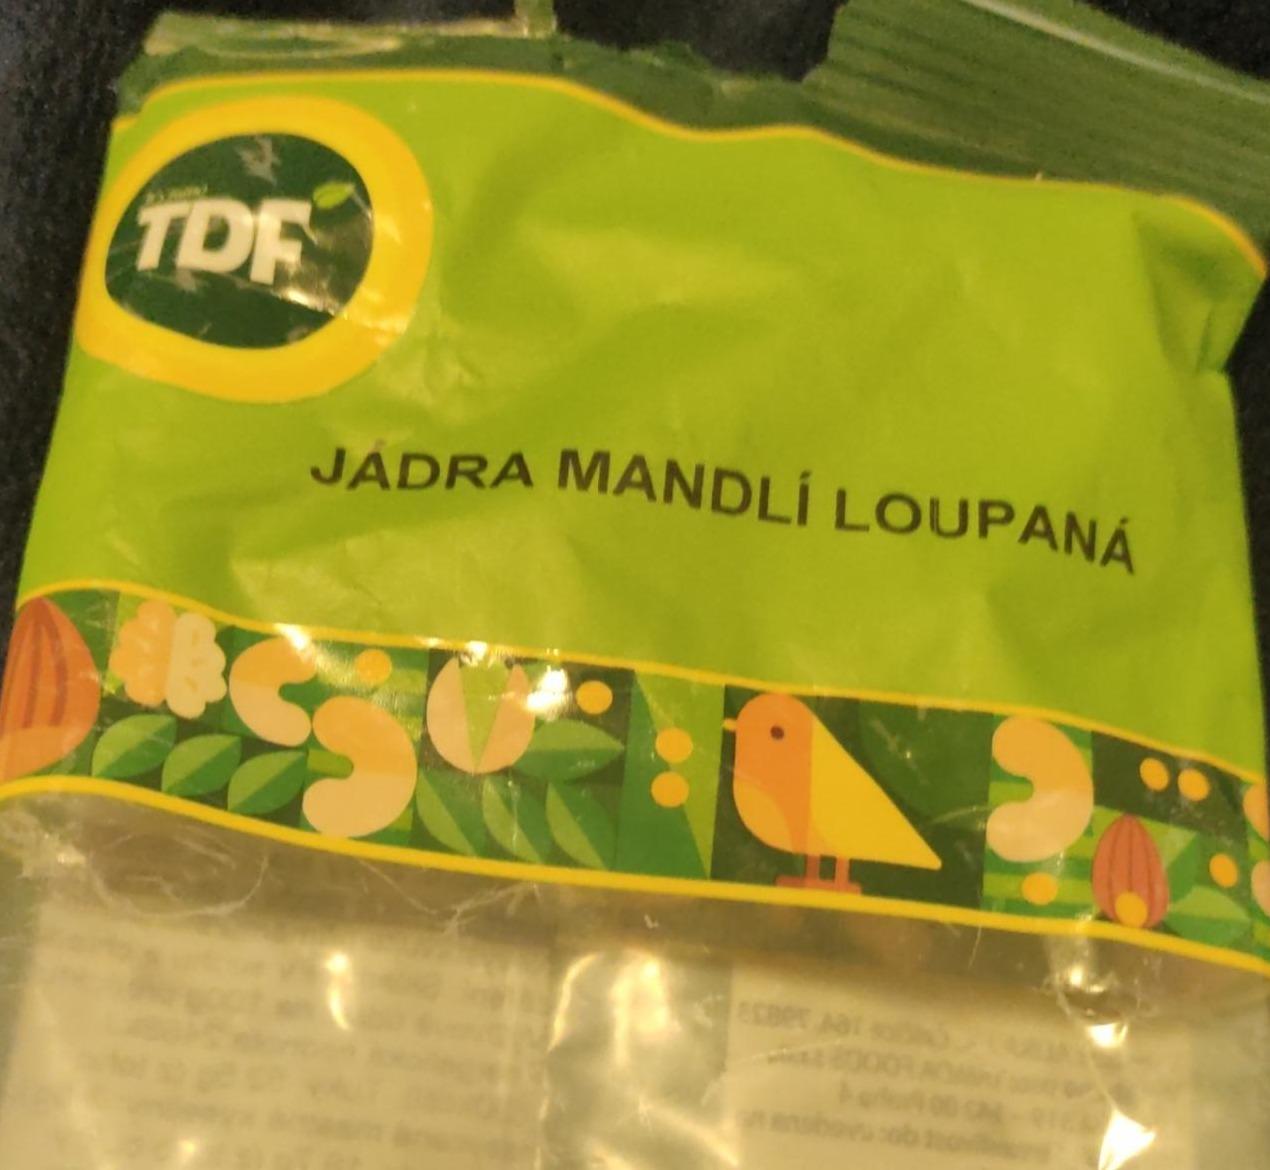 Fotografie - Jádra mandlí loupaná TDF